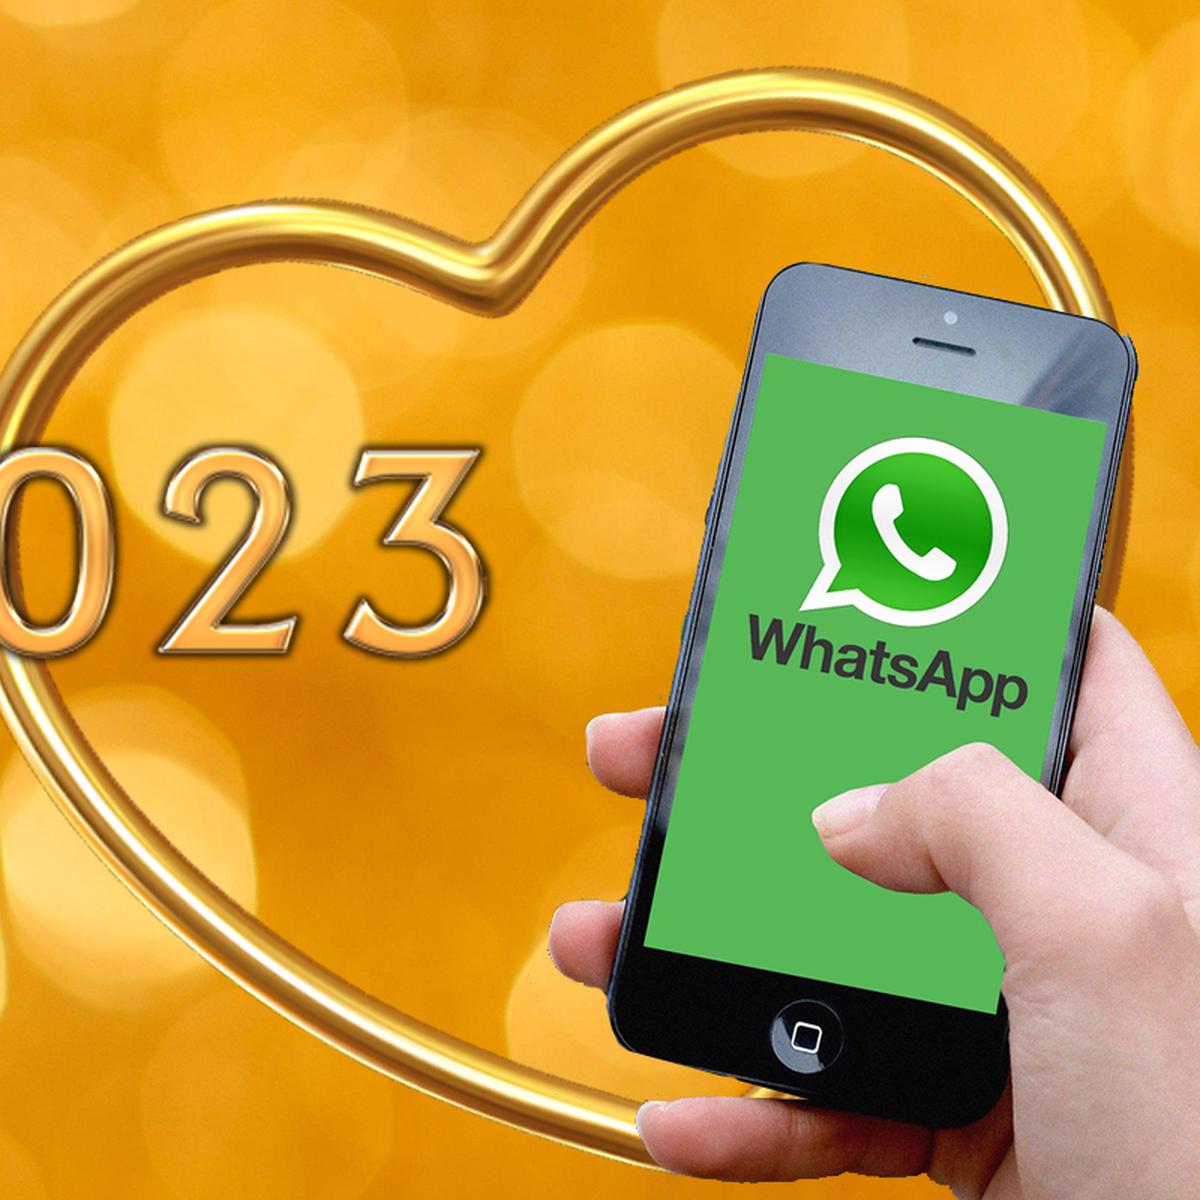 Año Nuevo 2023: las mejores frases de felicitación para dedicarle a tu  pareja por Whatsapp | DATA | MAG.